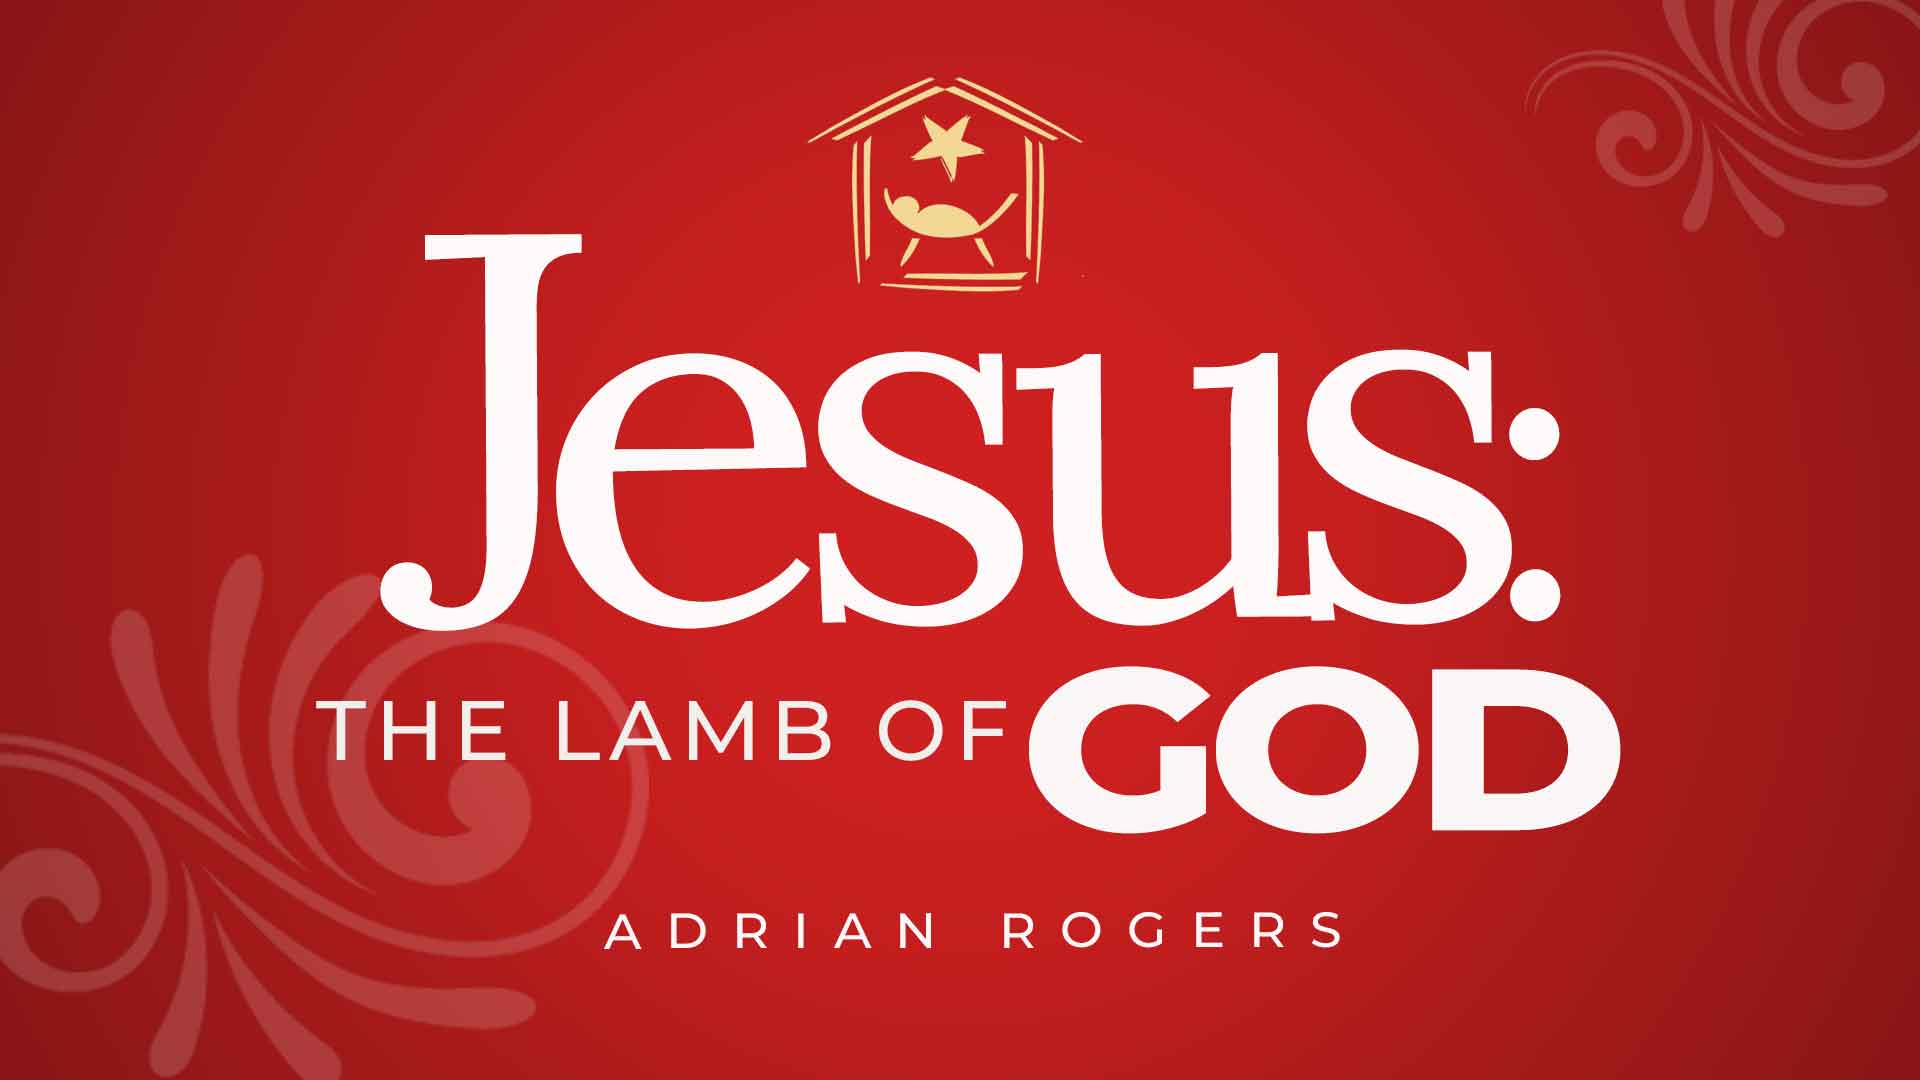 Dec25 Jesus Lamb Of God 1920x1080